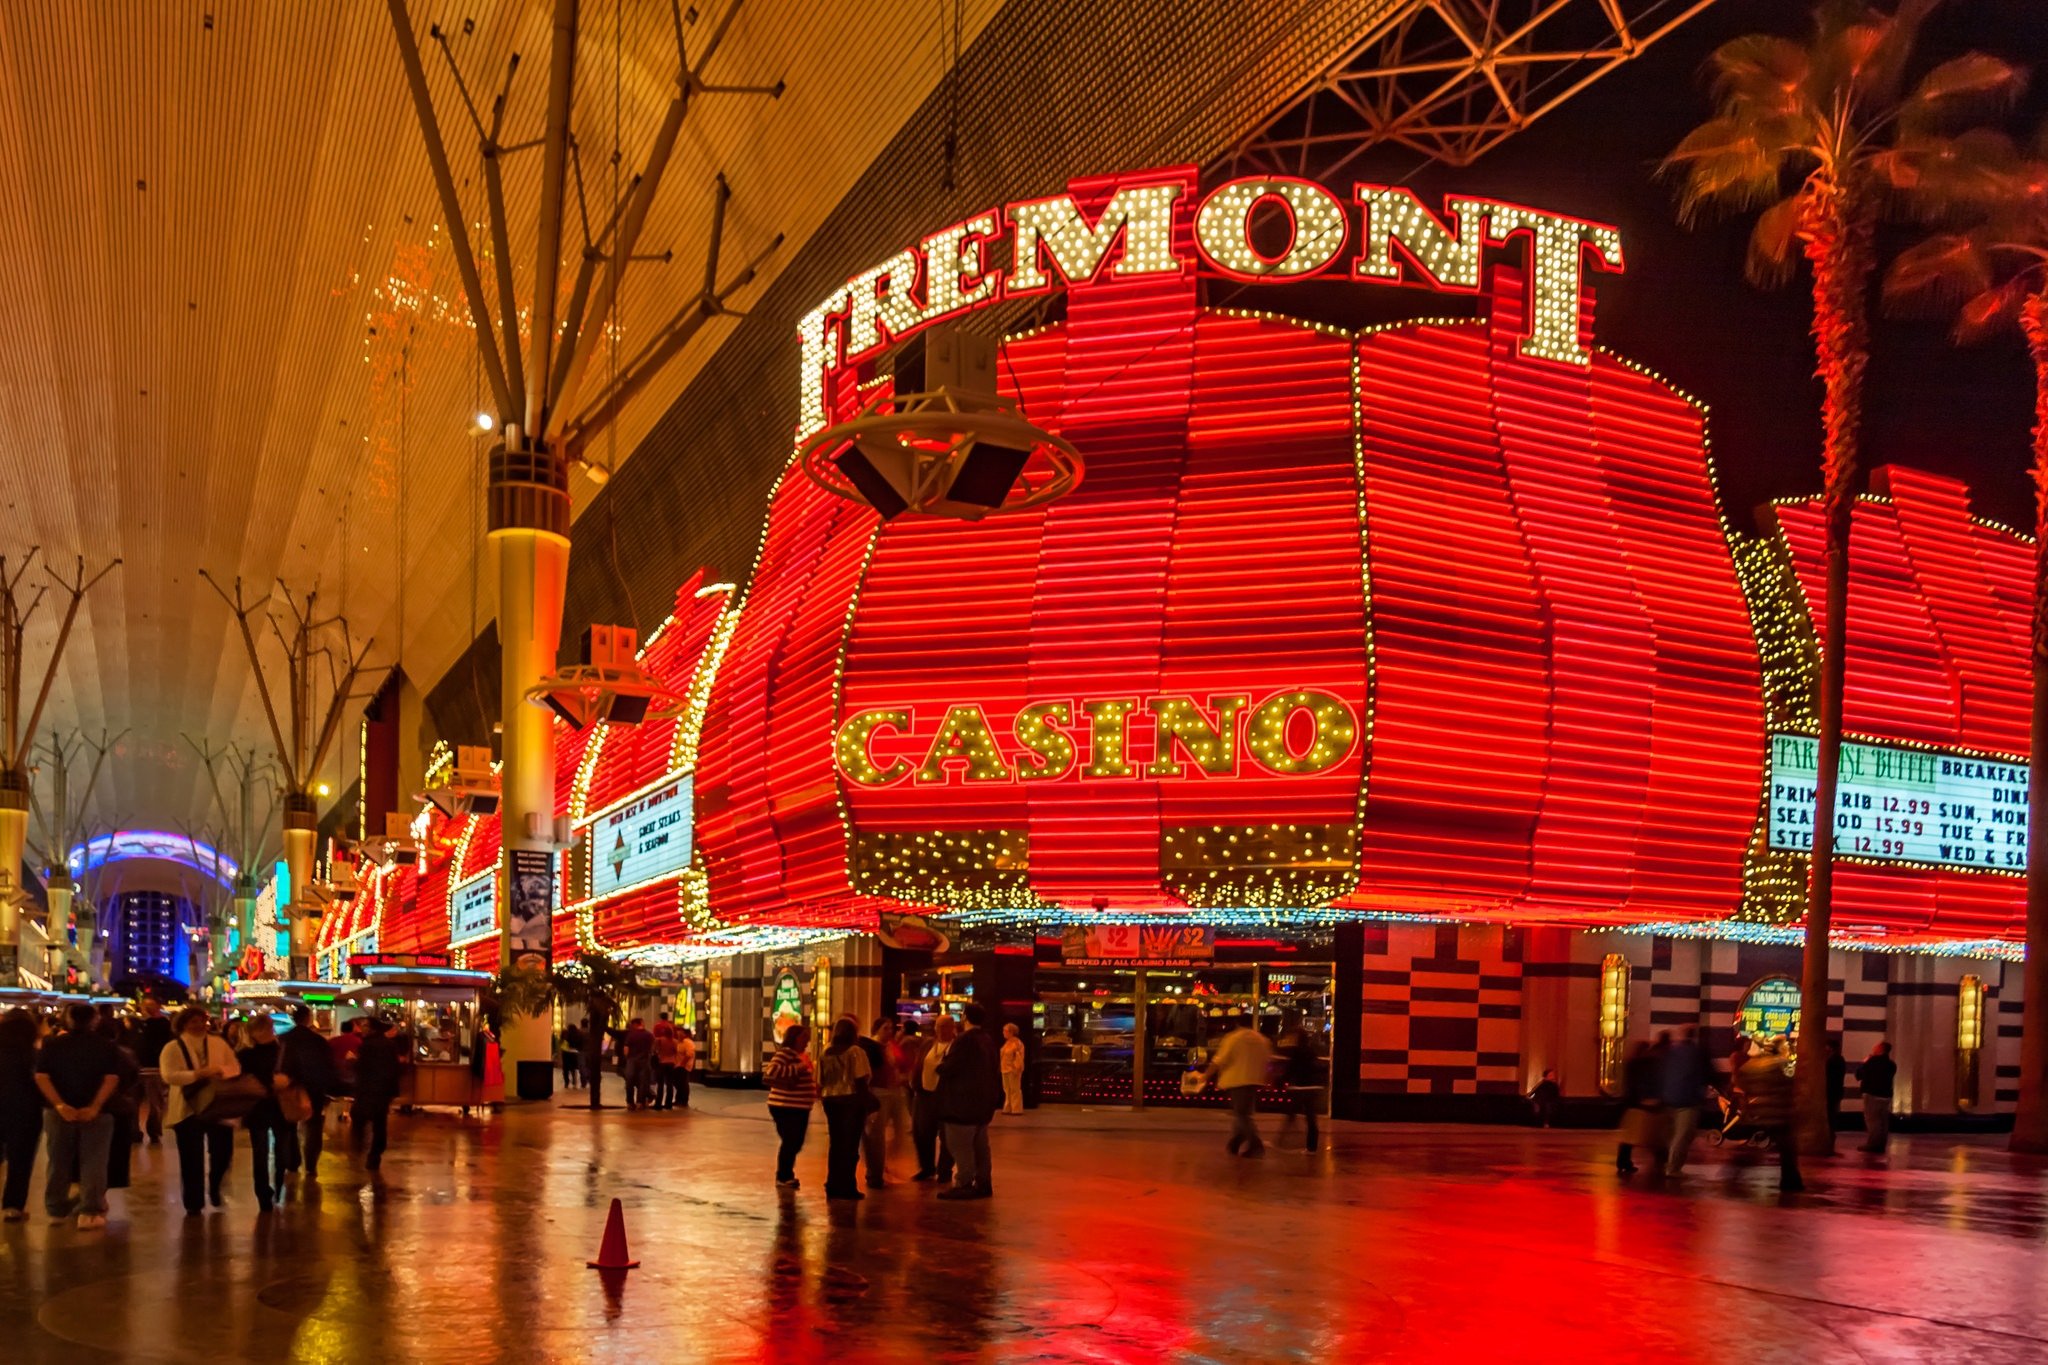 Casino Fremont con sus característicos colores rojos iluminados